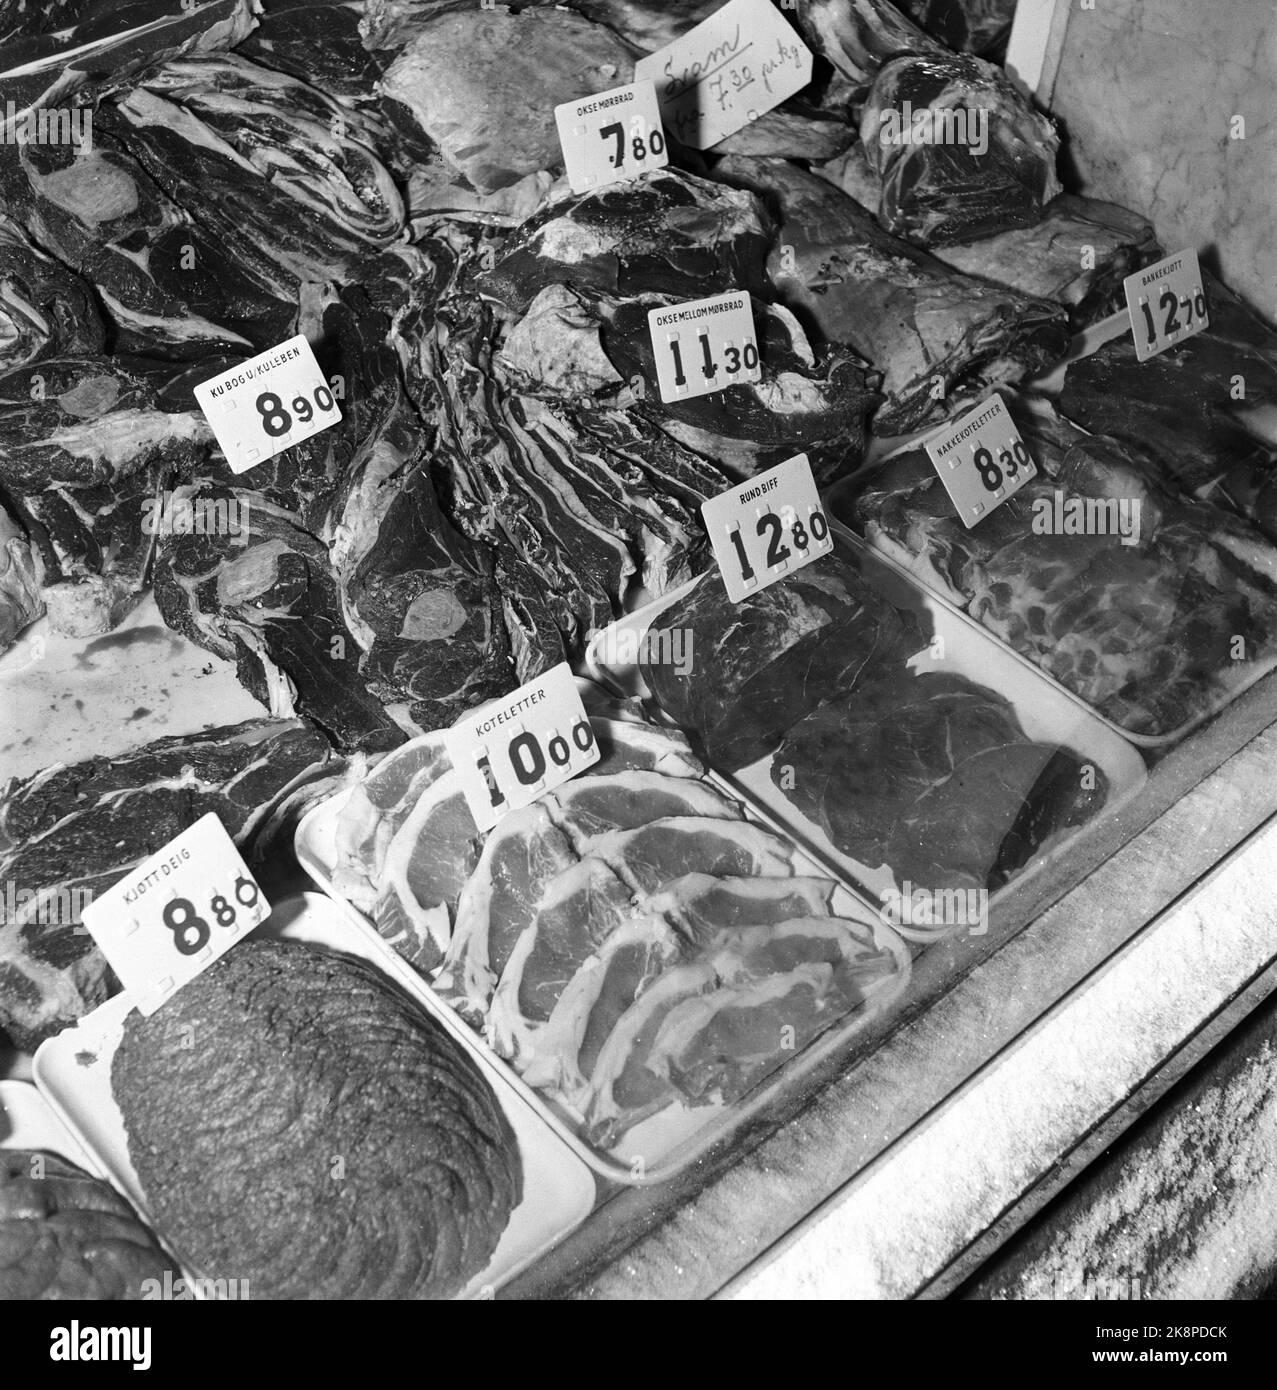 Oslo Januar 1955: Der Verbraucherrat wurde 1953 mit dem Ziel gegründet, die Interessen der Verbraucher zu wahren, wie Preise, Produktion, Warenlieferungen, Handelsmarken, Verpackung und Standardisierung. Es war nicht offensichtlich, dass der Preis für die Fleischstücke per angegeben wurde. KILO, aber in diesem Laden wurden die neuen Plastikschilder mit austauschbaren Zahlen verwendet, was es leicht machte, die Ware korrekt zu berechnen. Foto: Aage Storløkken / Aktuell / NTB Stockfoto